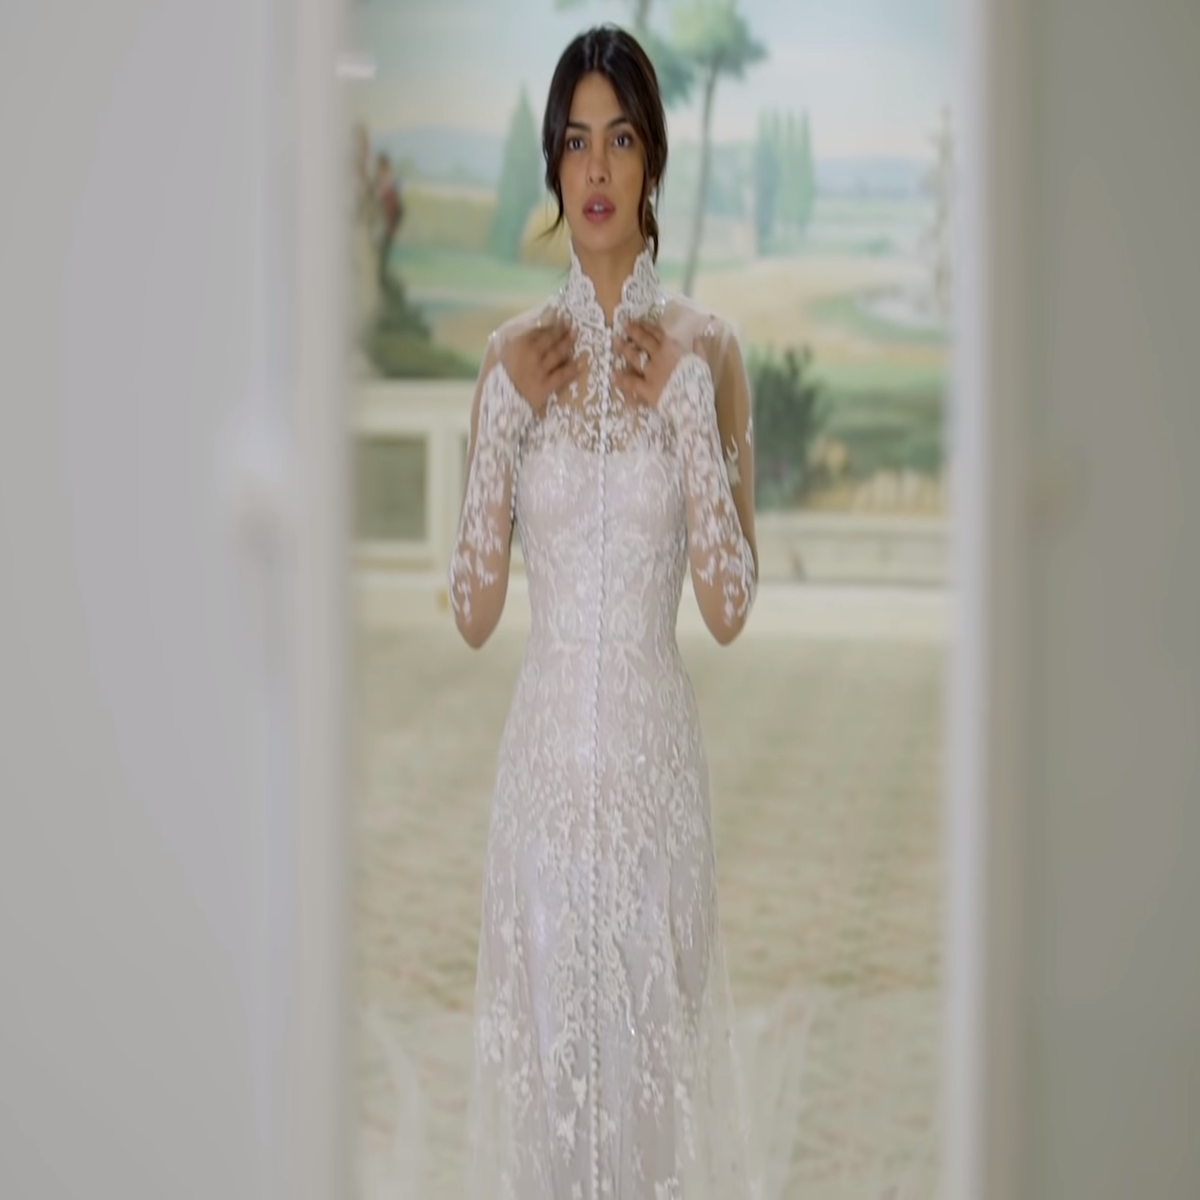 Ralph Lauren Reveals Details Hidden in Priyanka Chopra's Wedding